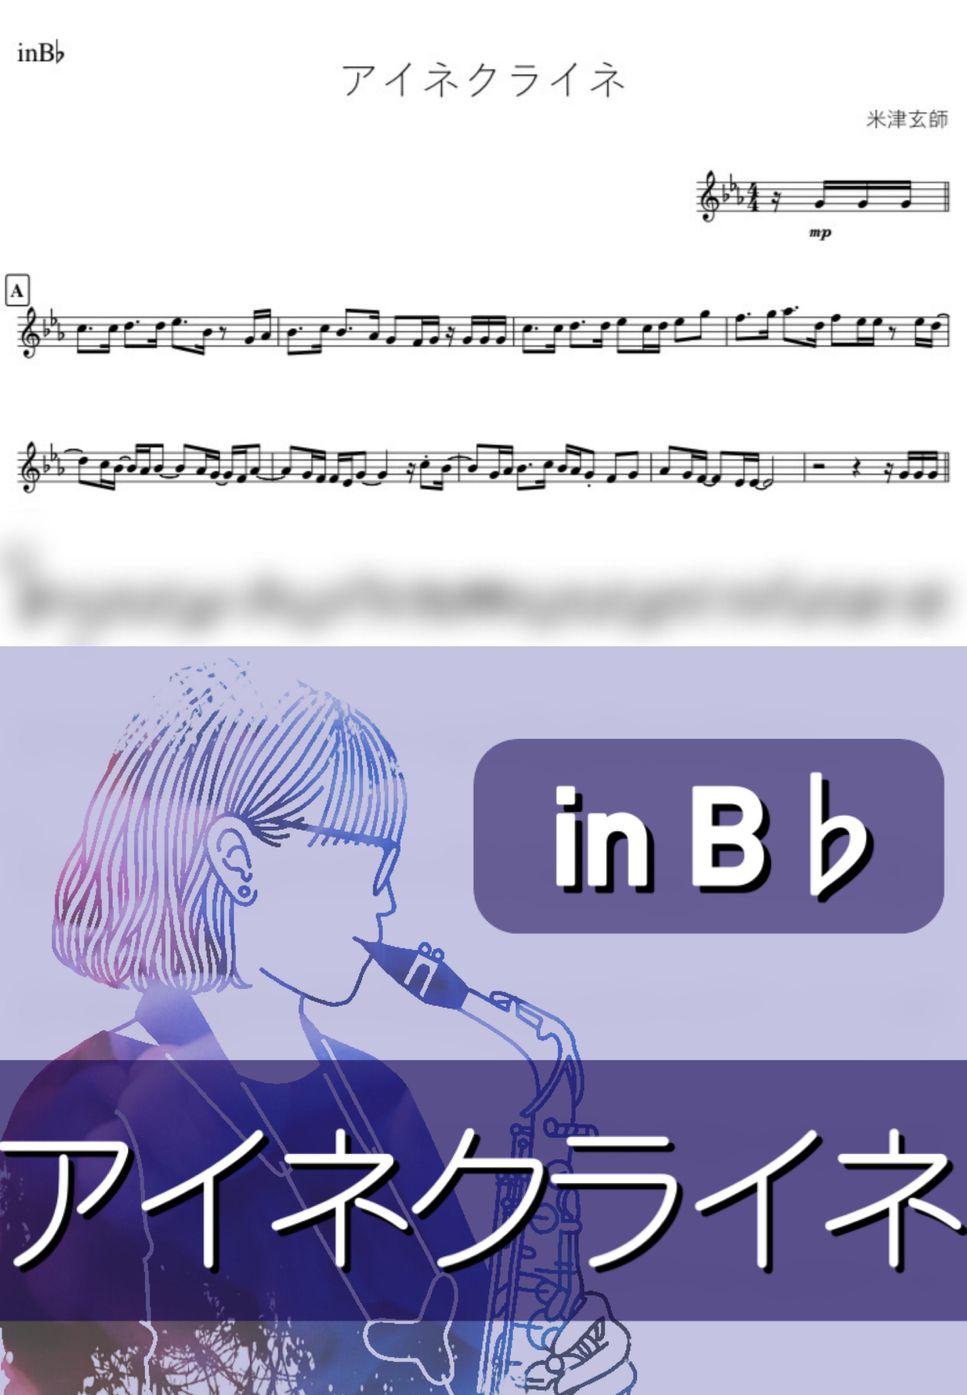 米津玄師 - アイネクライネ (B♭) by kanamusic